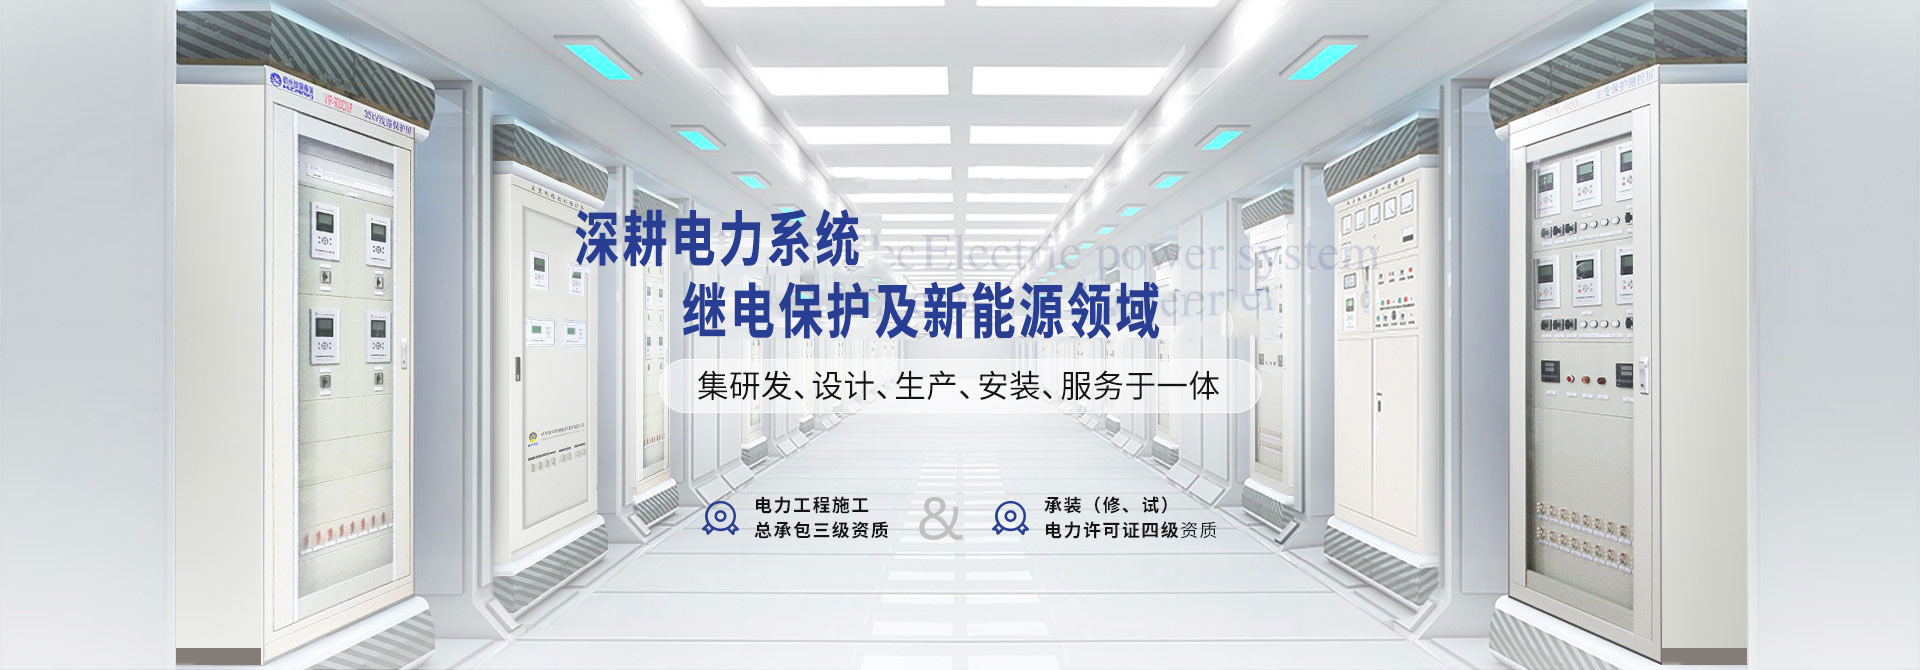 杭州继保电气集团深耕电力系统、微机保护保护装置及自动化领域